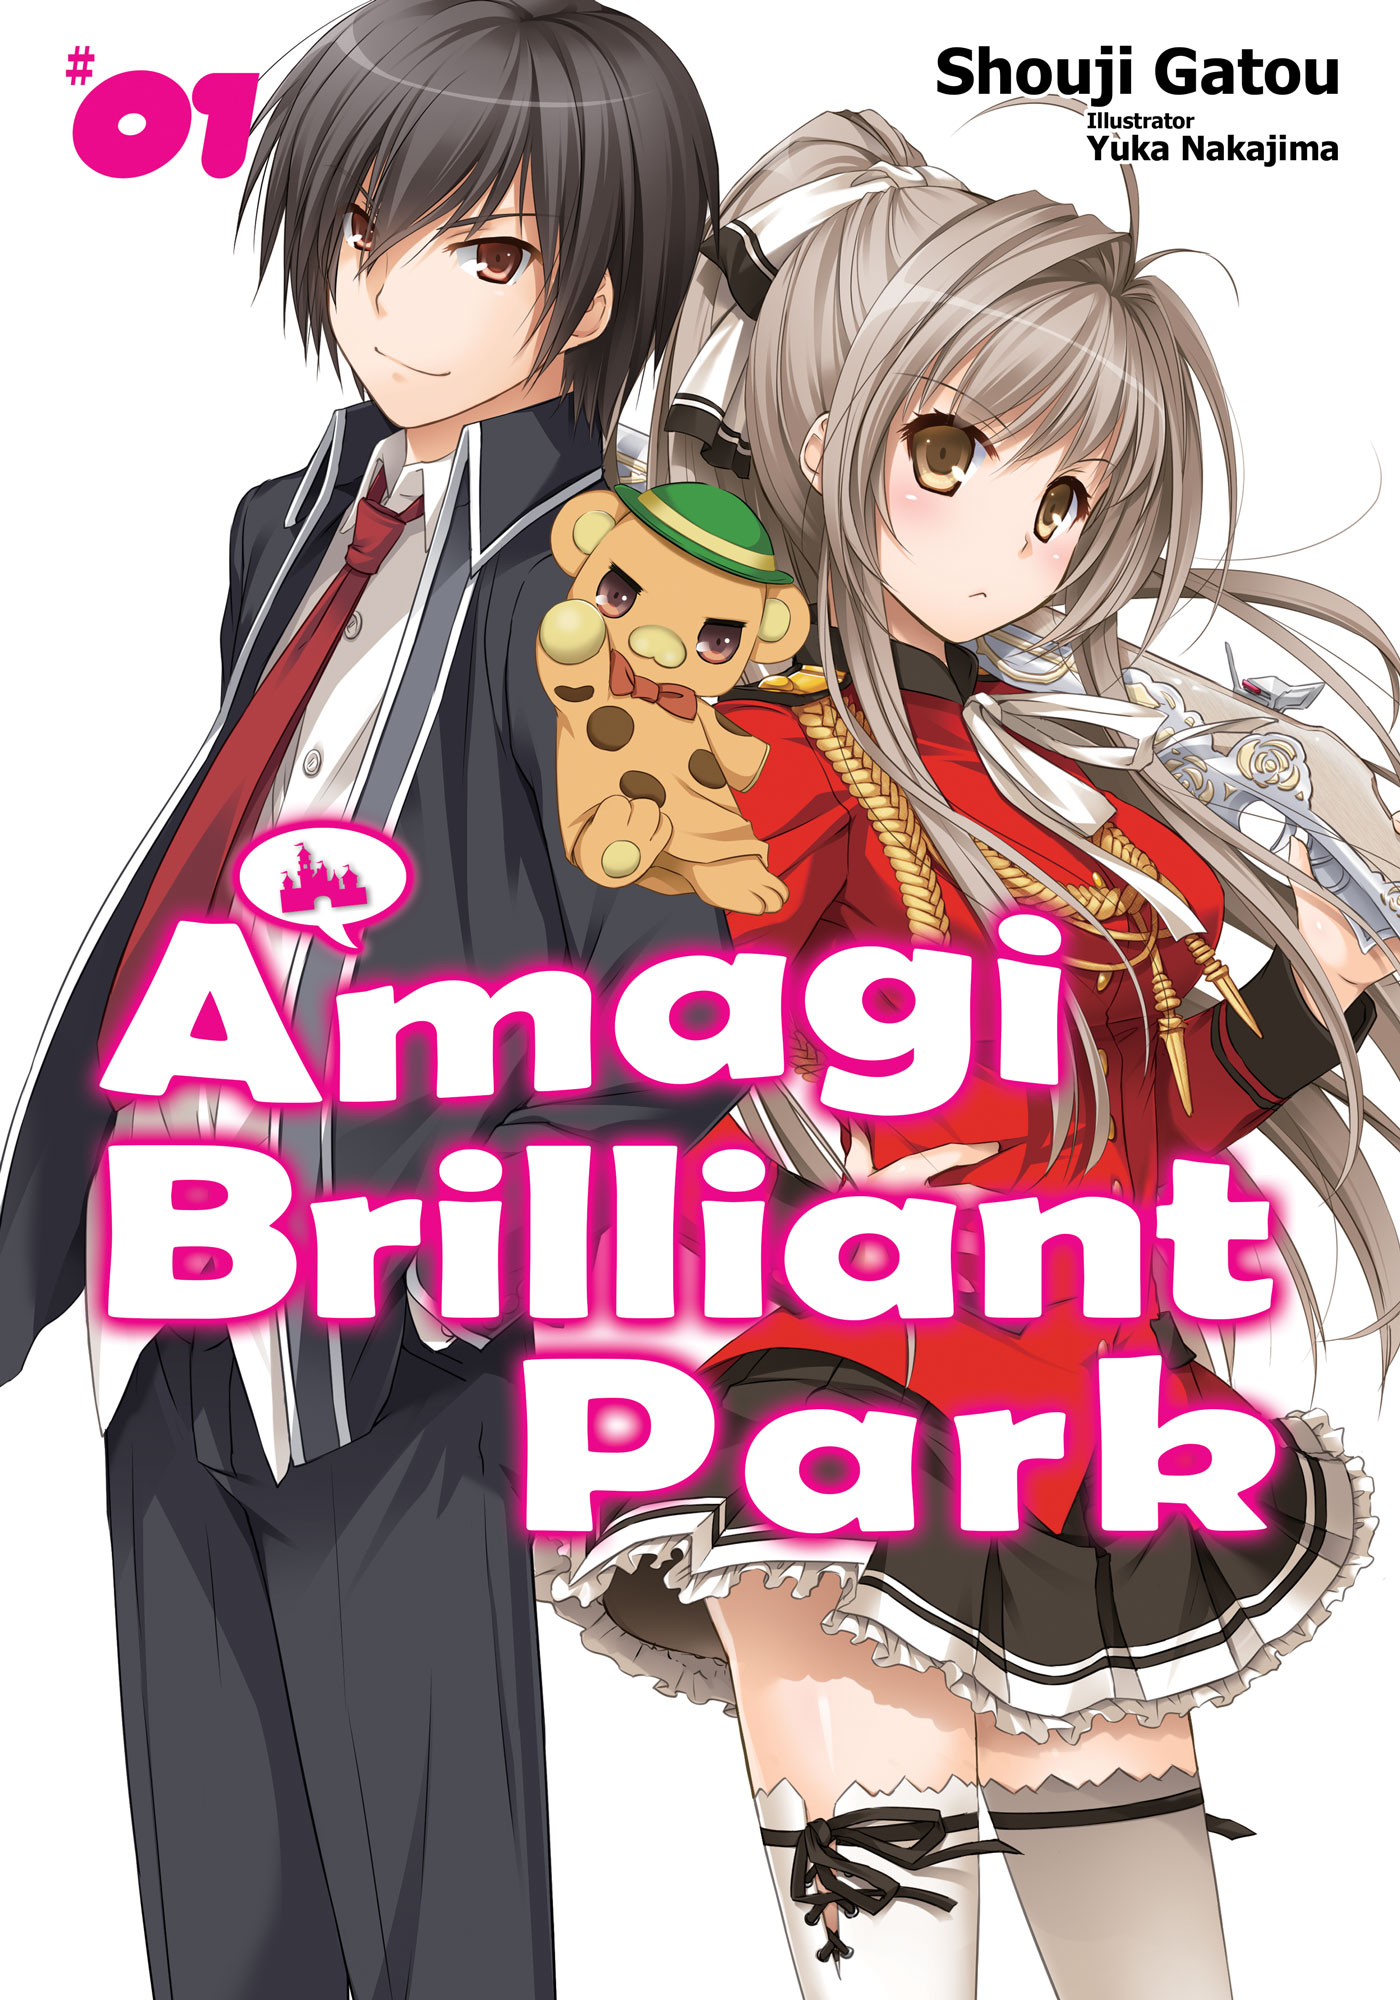 das Bild zeigt das Cover von Amagi Brilliant Park. man sieht die beiden Hauptcharaktere Kanie Seiya und Sento Isuzu. Er trägt eine japanische Schuluniform mit Krawatte und hat dunkles Haar und ein Grinsen im Gesicht. Sie trägt eine etwas festlichere Uniform mit Rock und hat eine Muskete in der Hand.